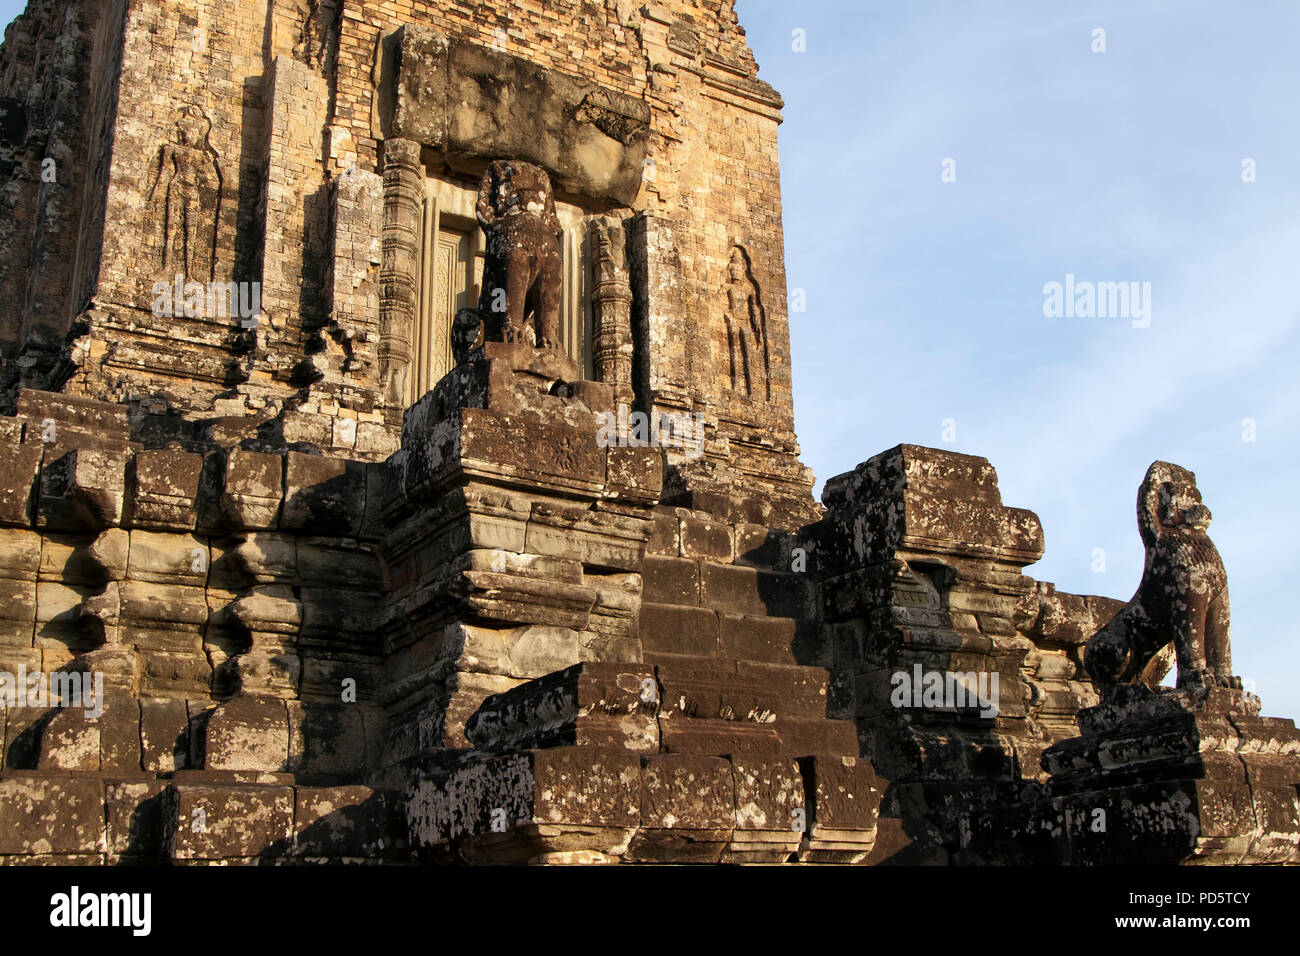 Angkor Cambodge, crépuscule vue de Pre Rup un temple hindou du 10ème siècle en pierre avec des statues animales on staircase Banque D'Images